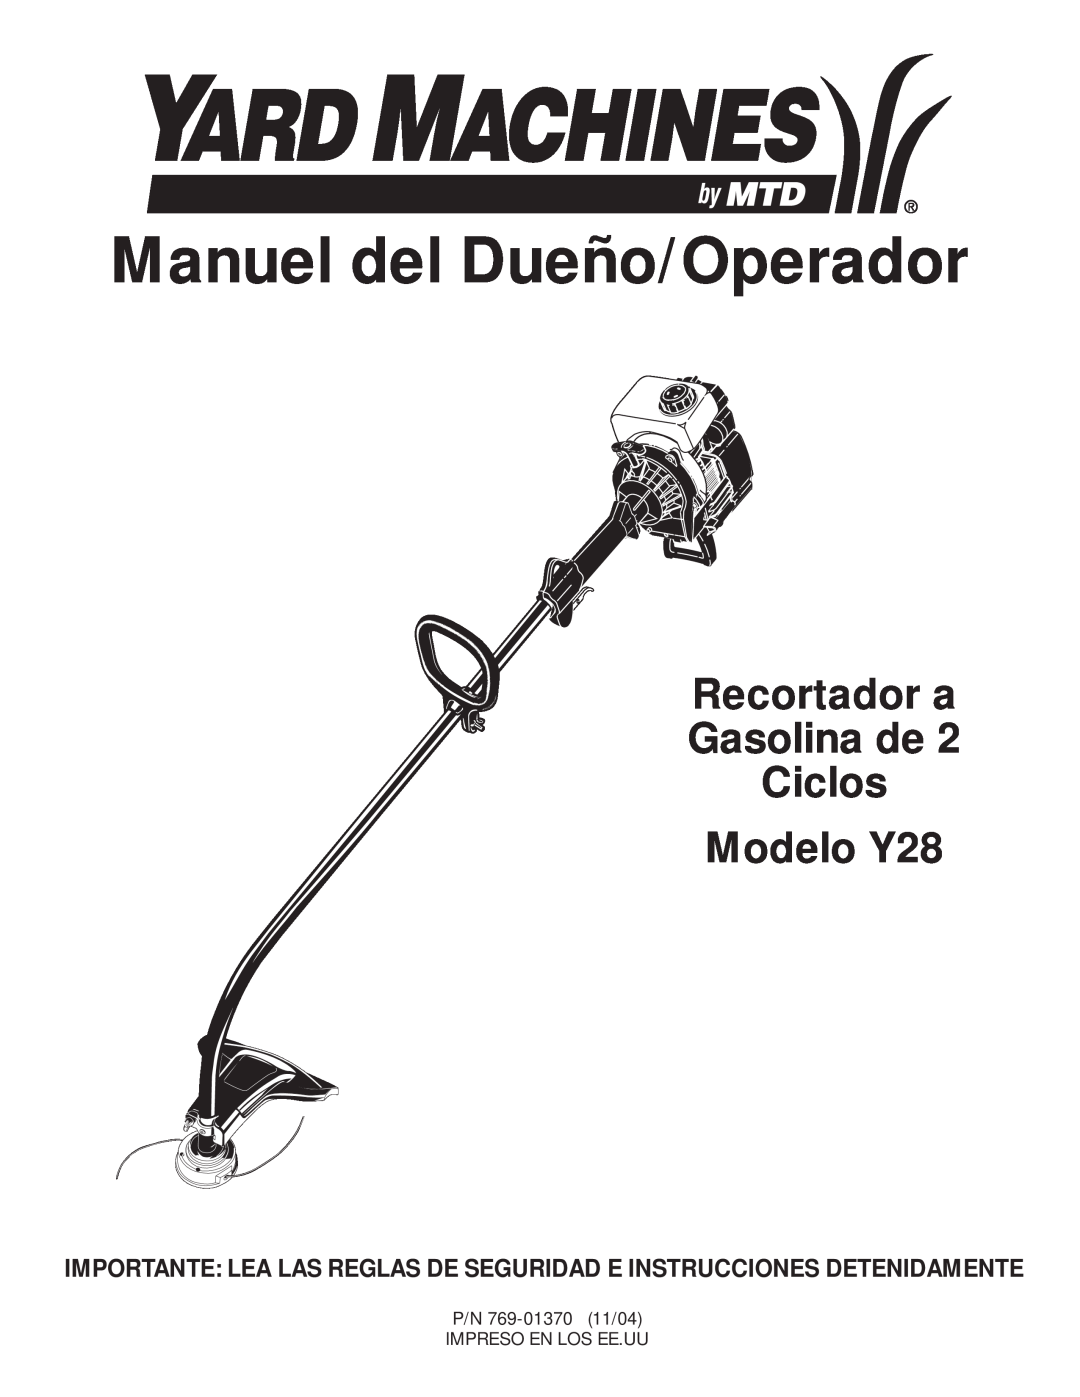 MTD manual Manuel del Dueño/Operador, Recortador a Gasolina de Ciclos Modelo Y28 